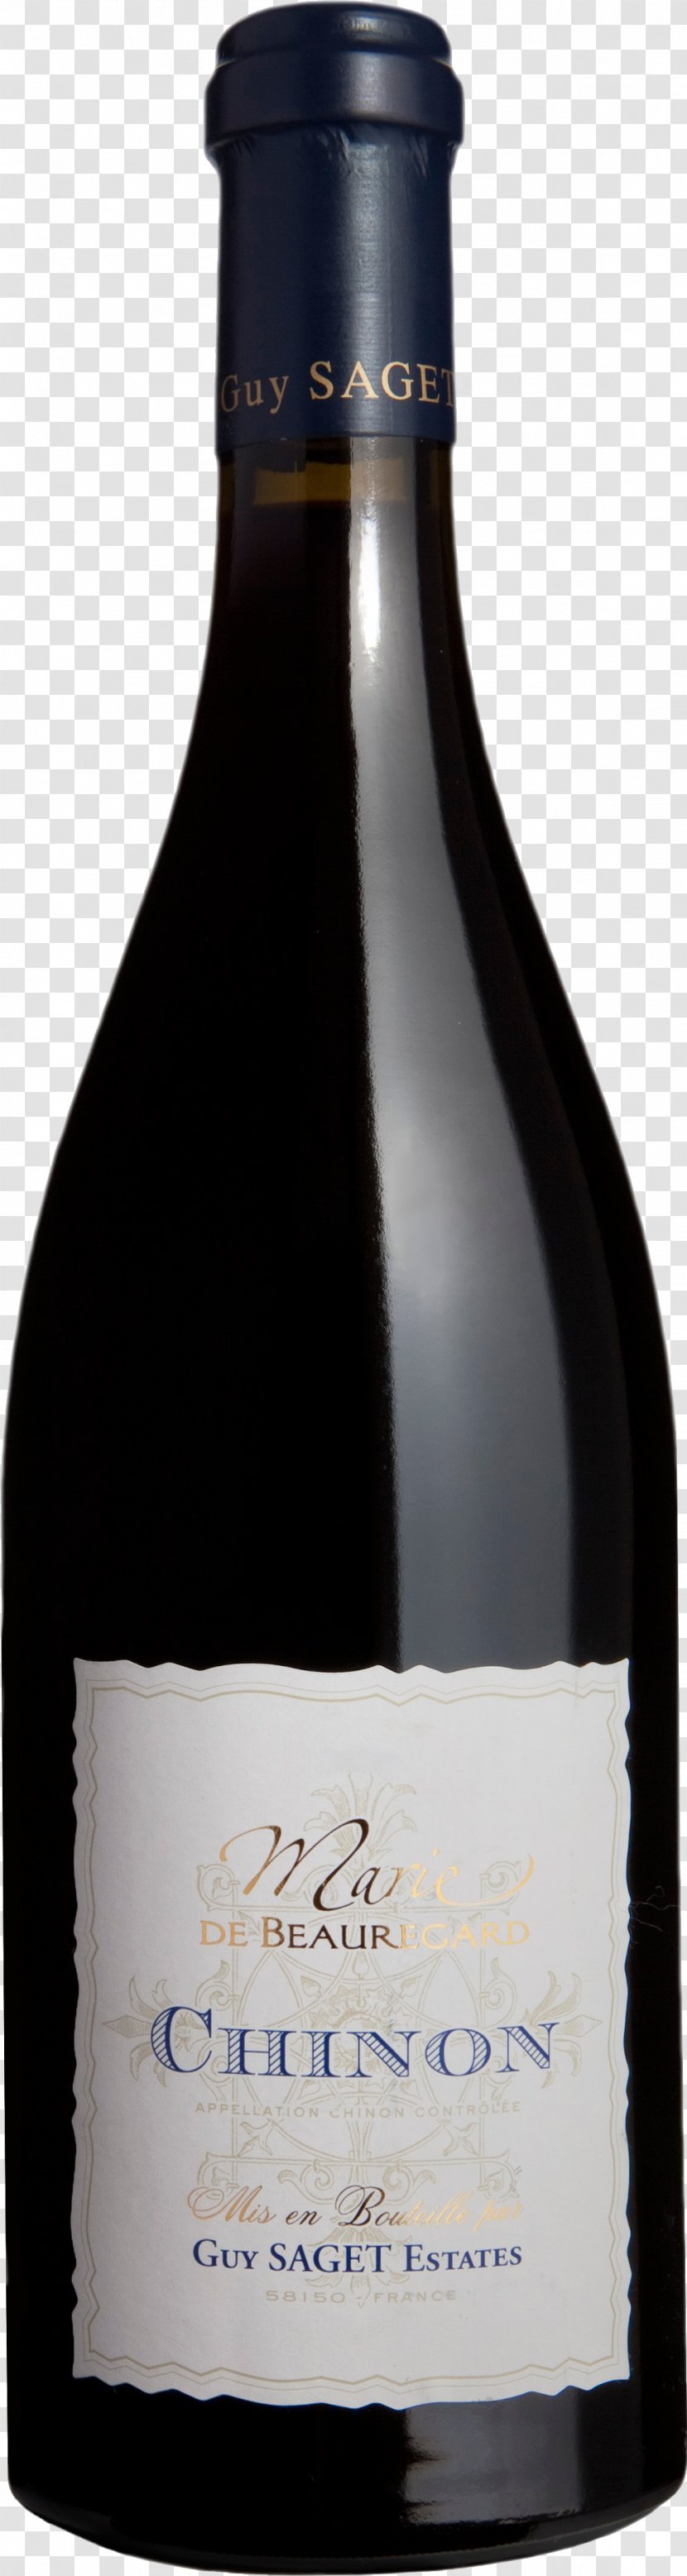 Chinon AOC Wine Pinot Noir Saget La Perrière - Heart Transparent PNG